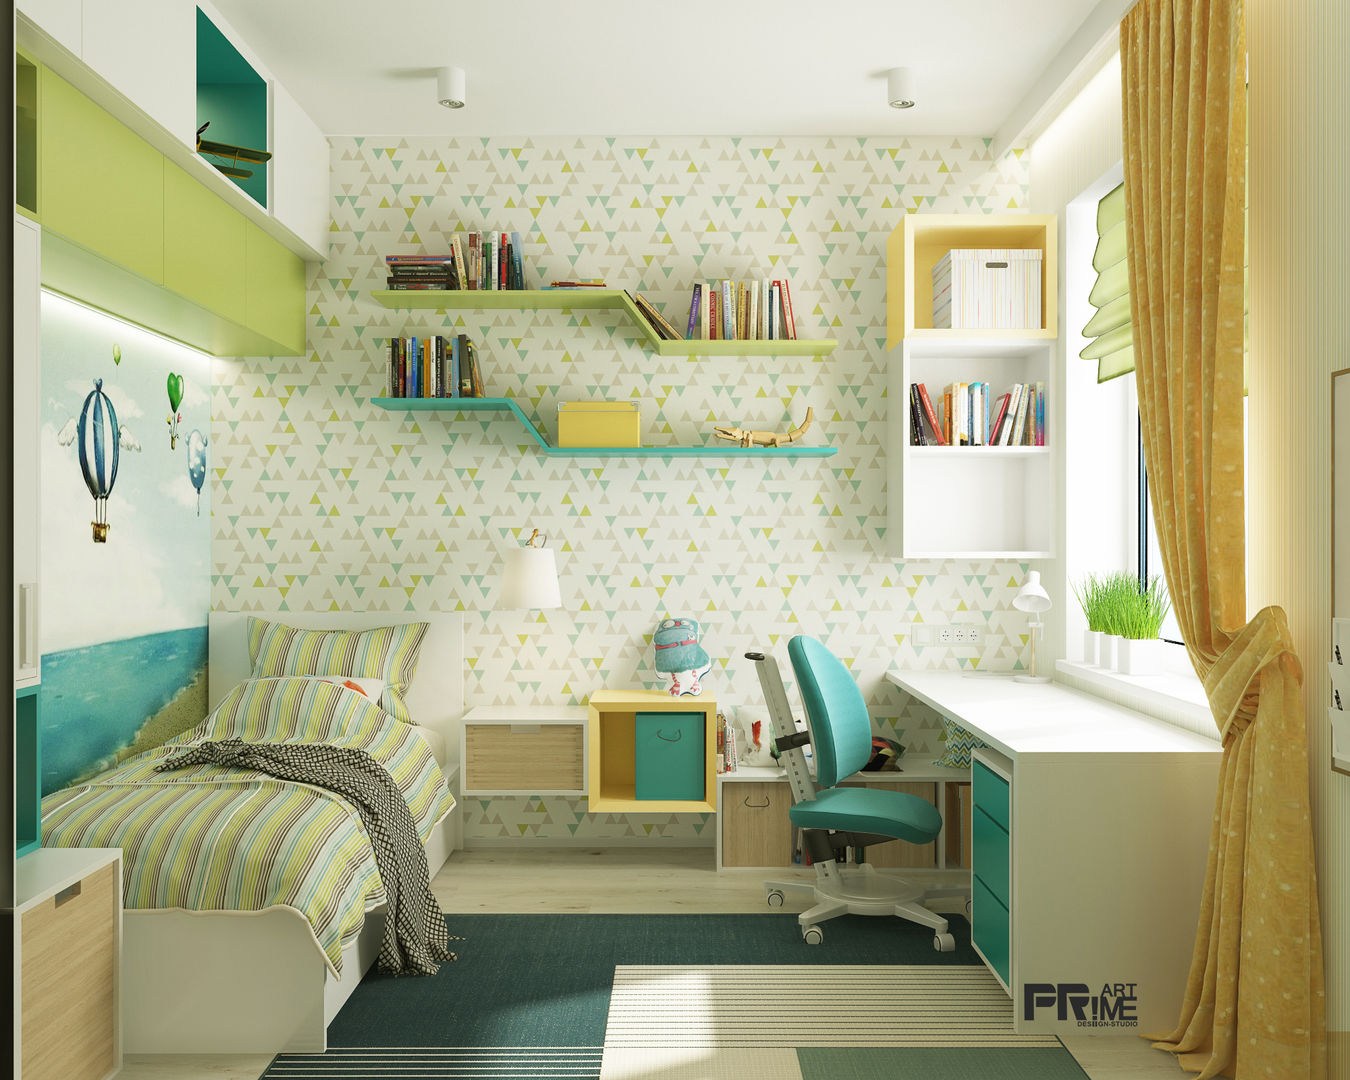 Из двухкомнатной квартиры сделали трехкомнатную и кабинет-гостевая!, "PRimeART" 'PRimeART' Nursery/kid’s room